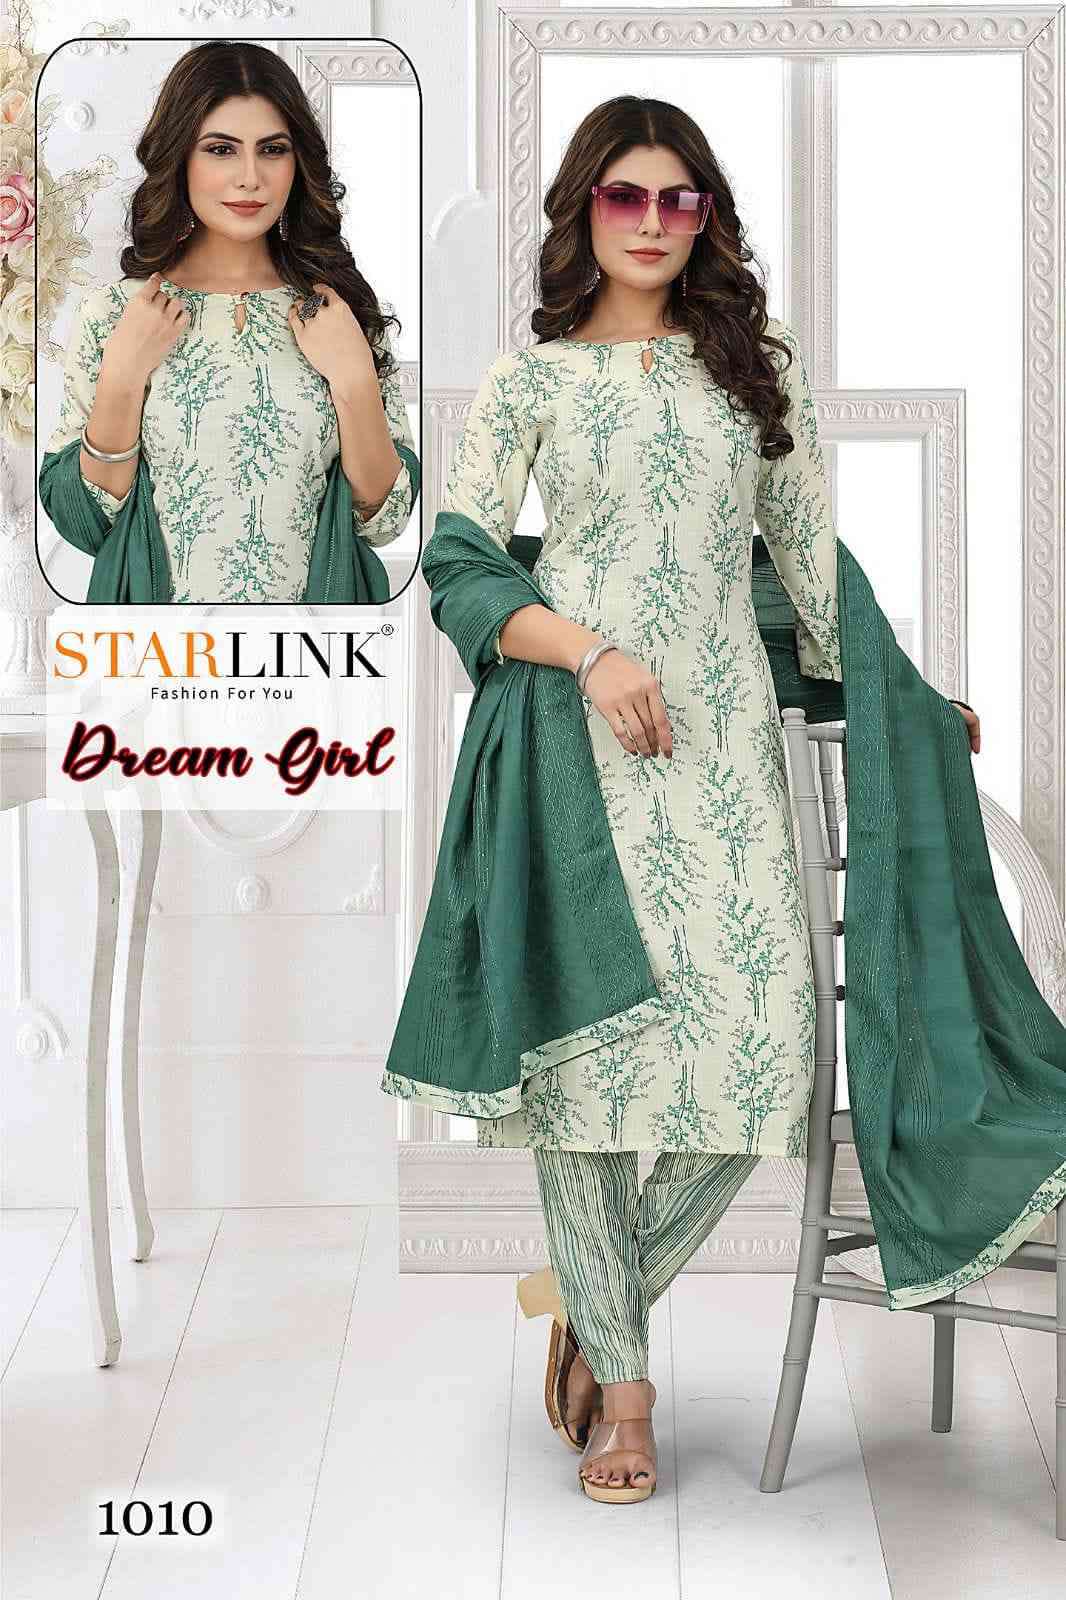 Starlink Dream Girl Exclusive Capsule Printed Kurti Pant Dupatta Set Wholesaler